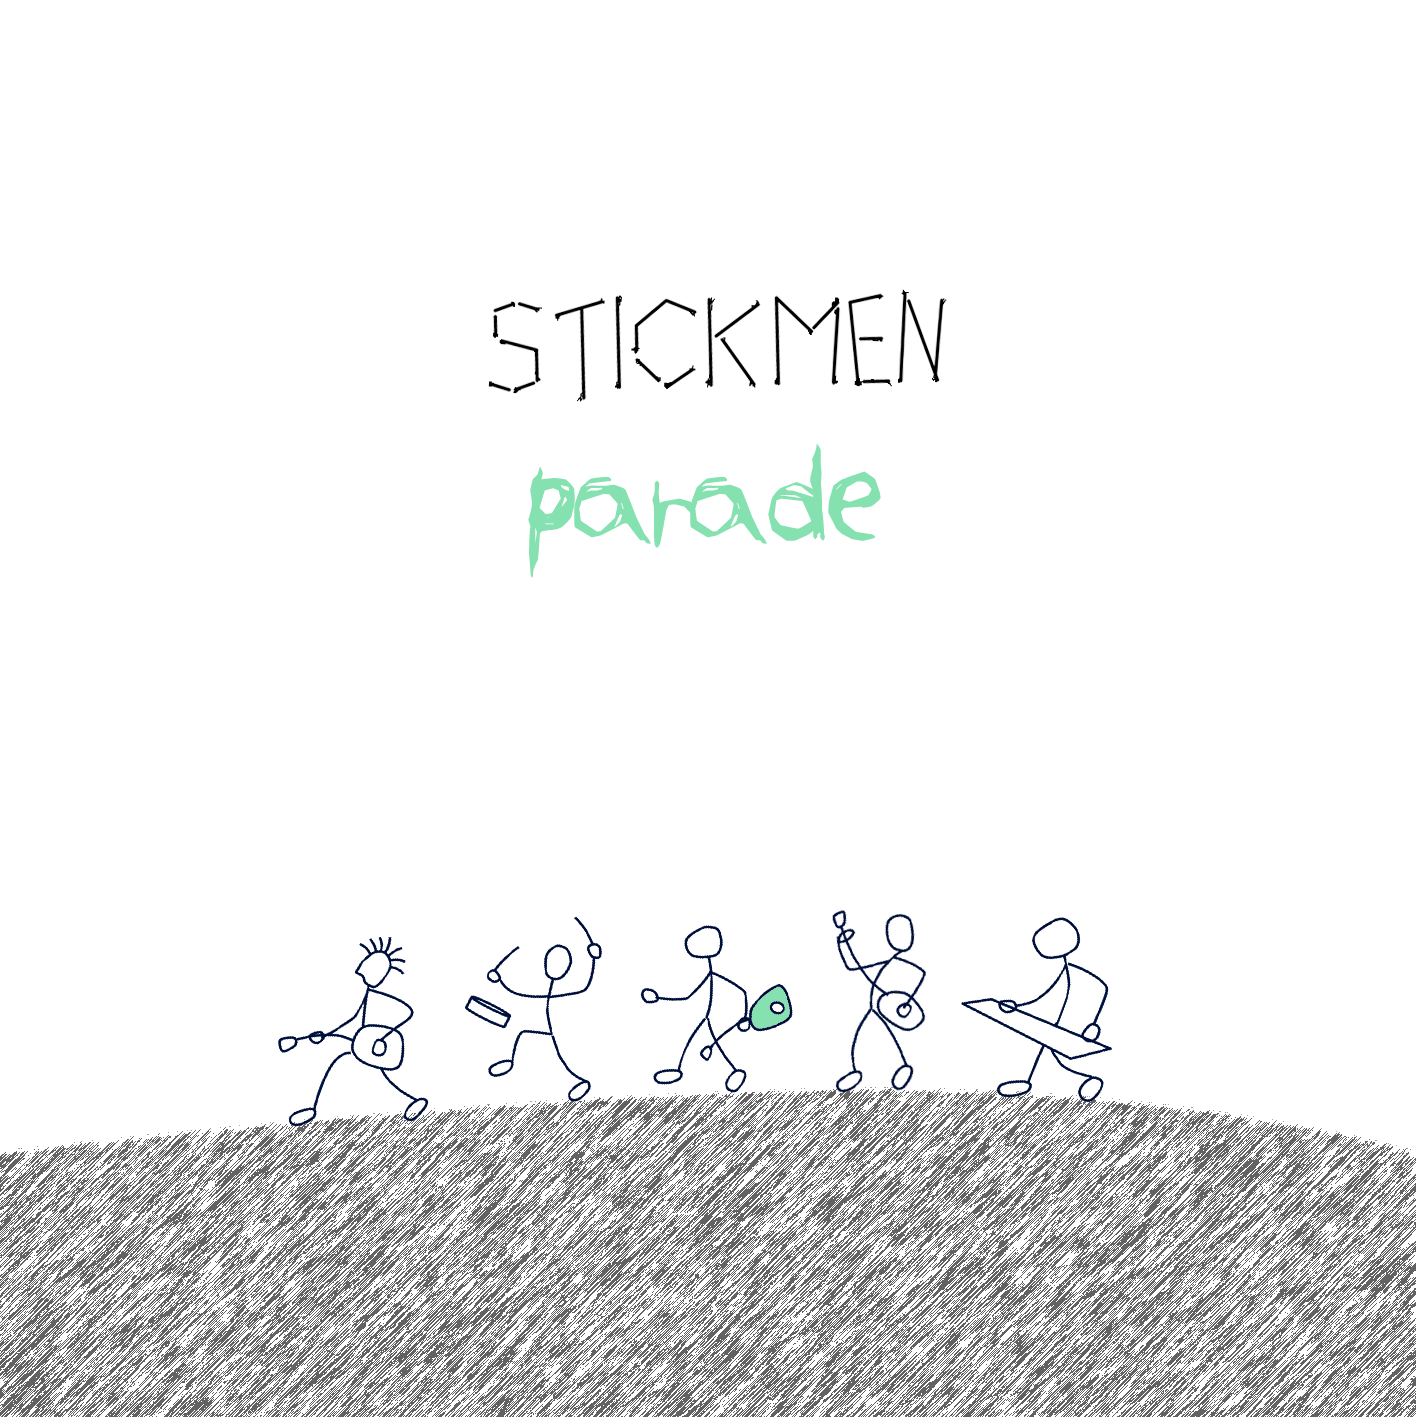 CD Cover Stickmen Parade